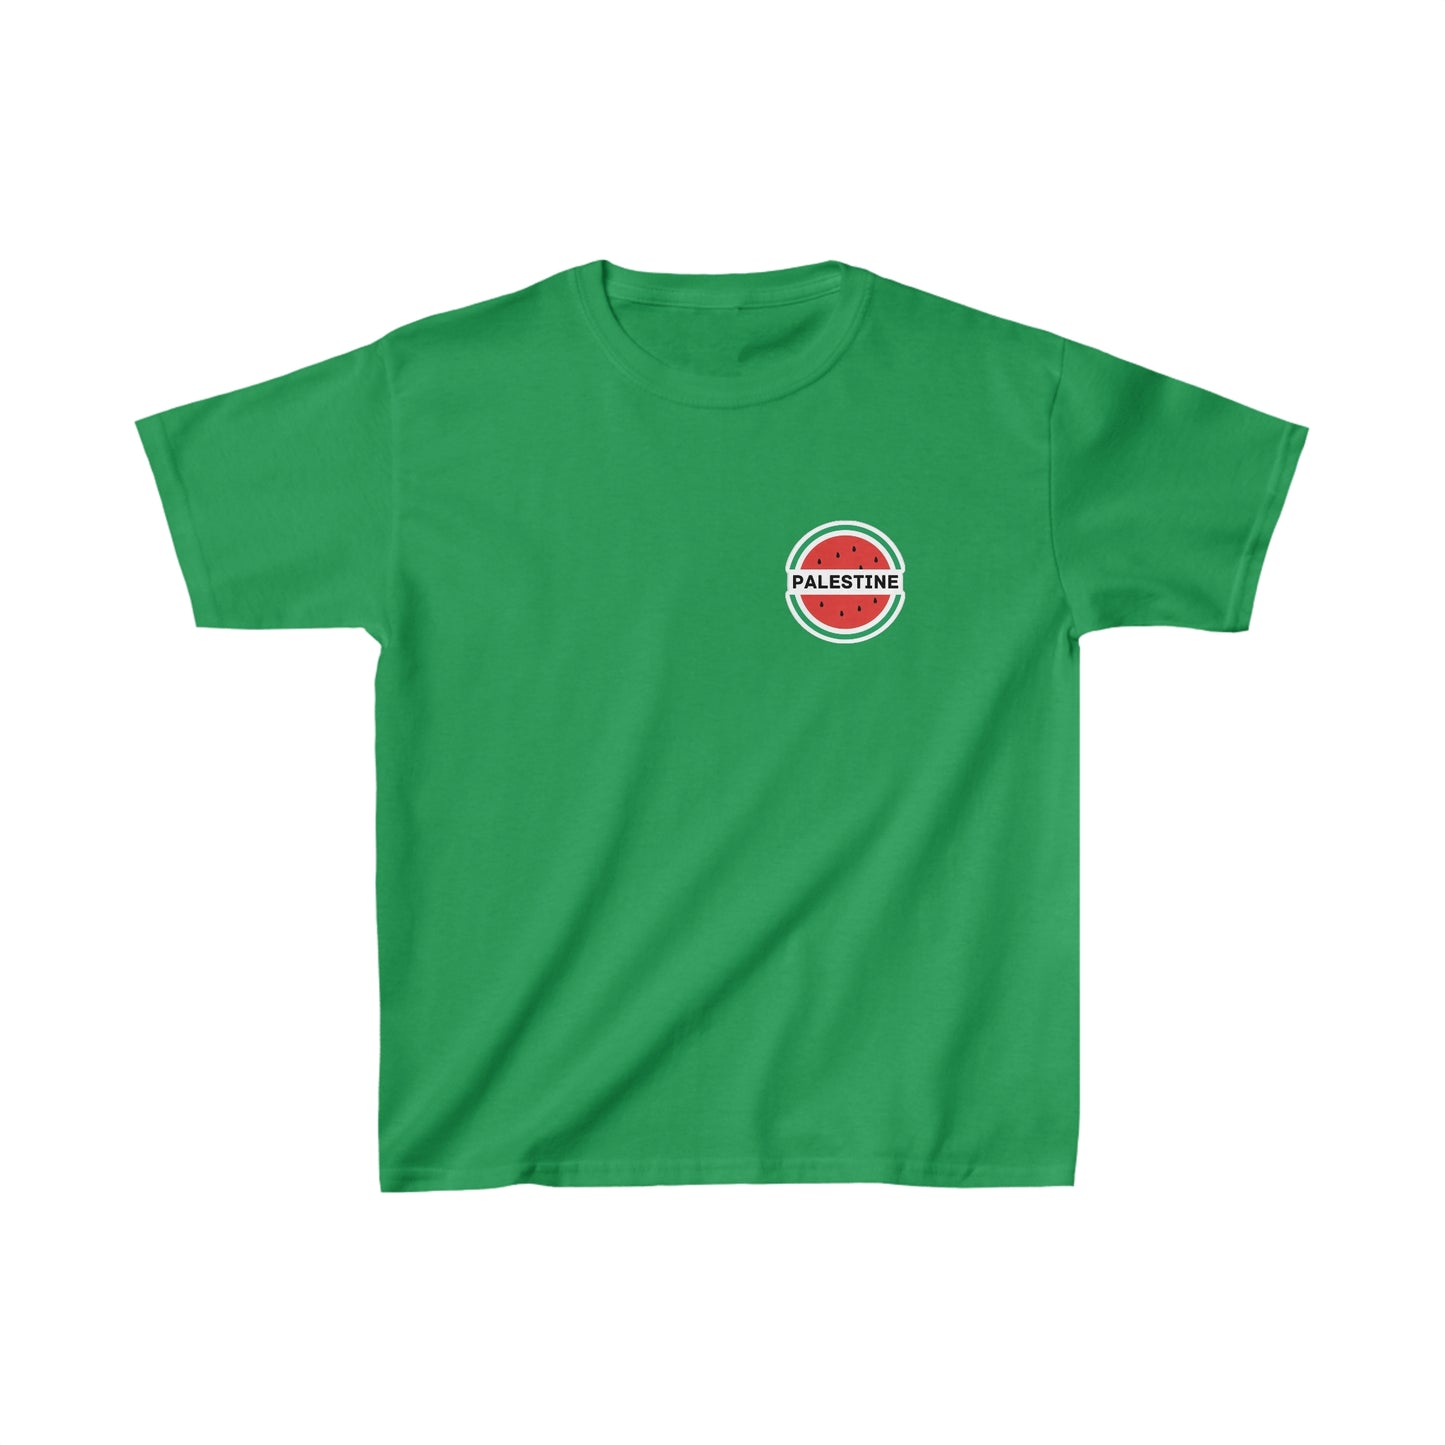 Kinder-T-Shirt „Palestine Watermelon“ aus schwerer Baumwolle